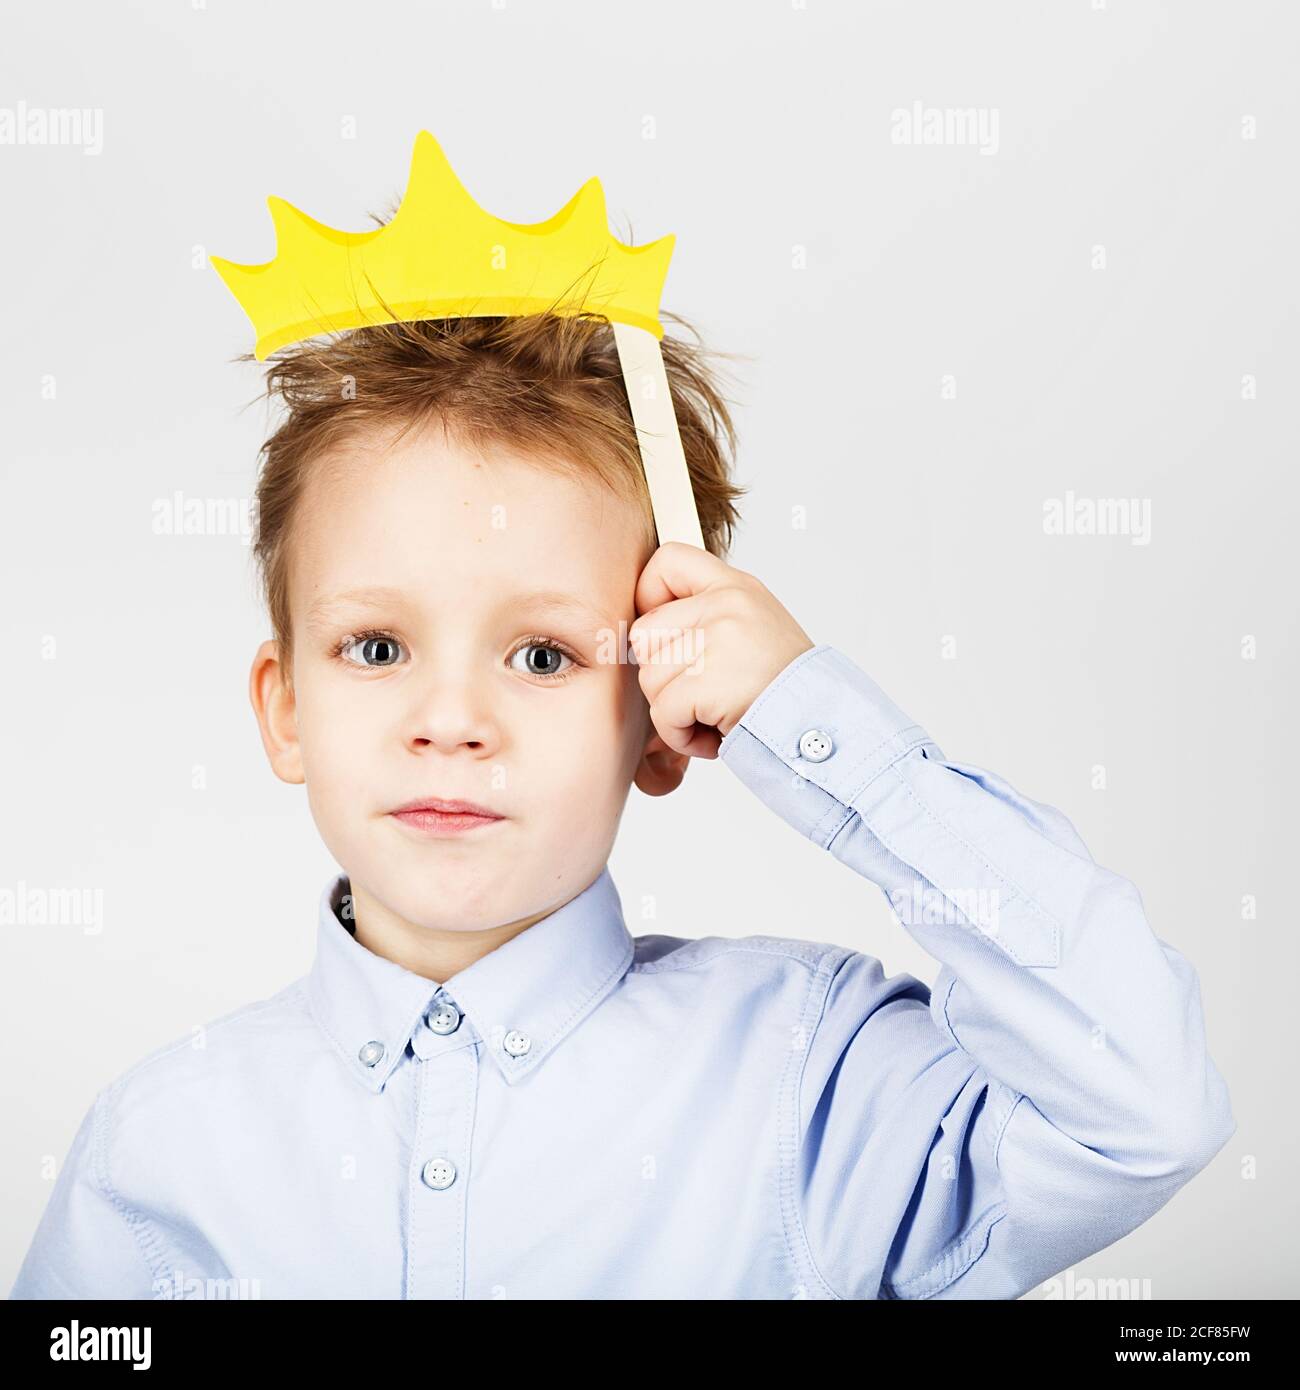 Retrato de un lindo niño con corona de papel amarilla sobre fondo blanco.  Alegre y sonriente Kid con divertidos accesorios fotográficos. De vuelta a  la escuela Fotografía de stock - Alamy